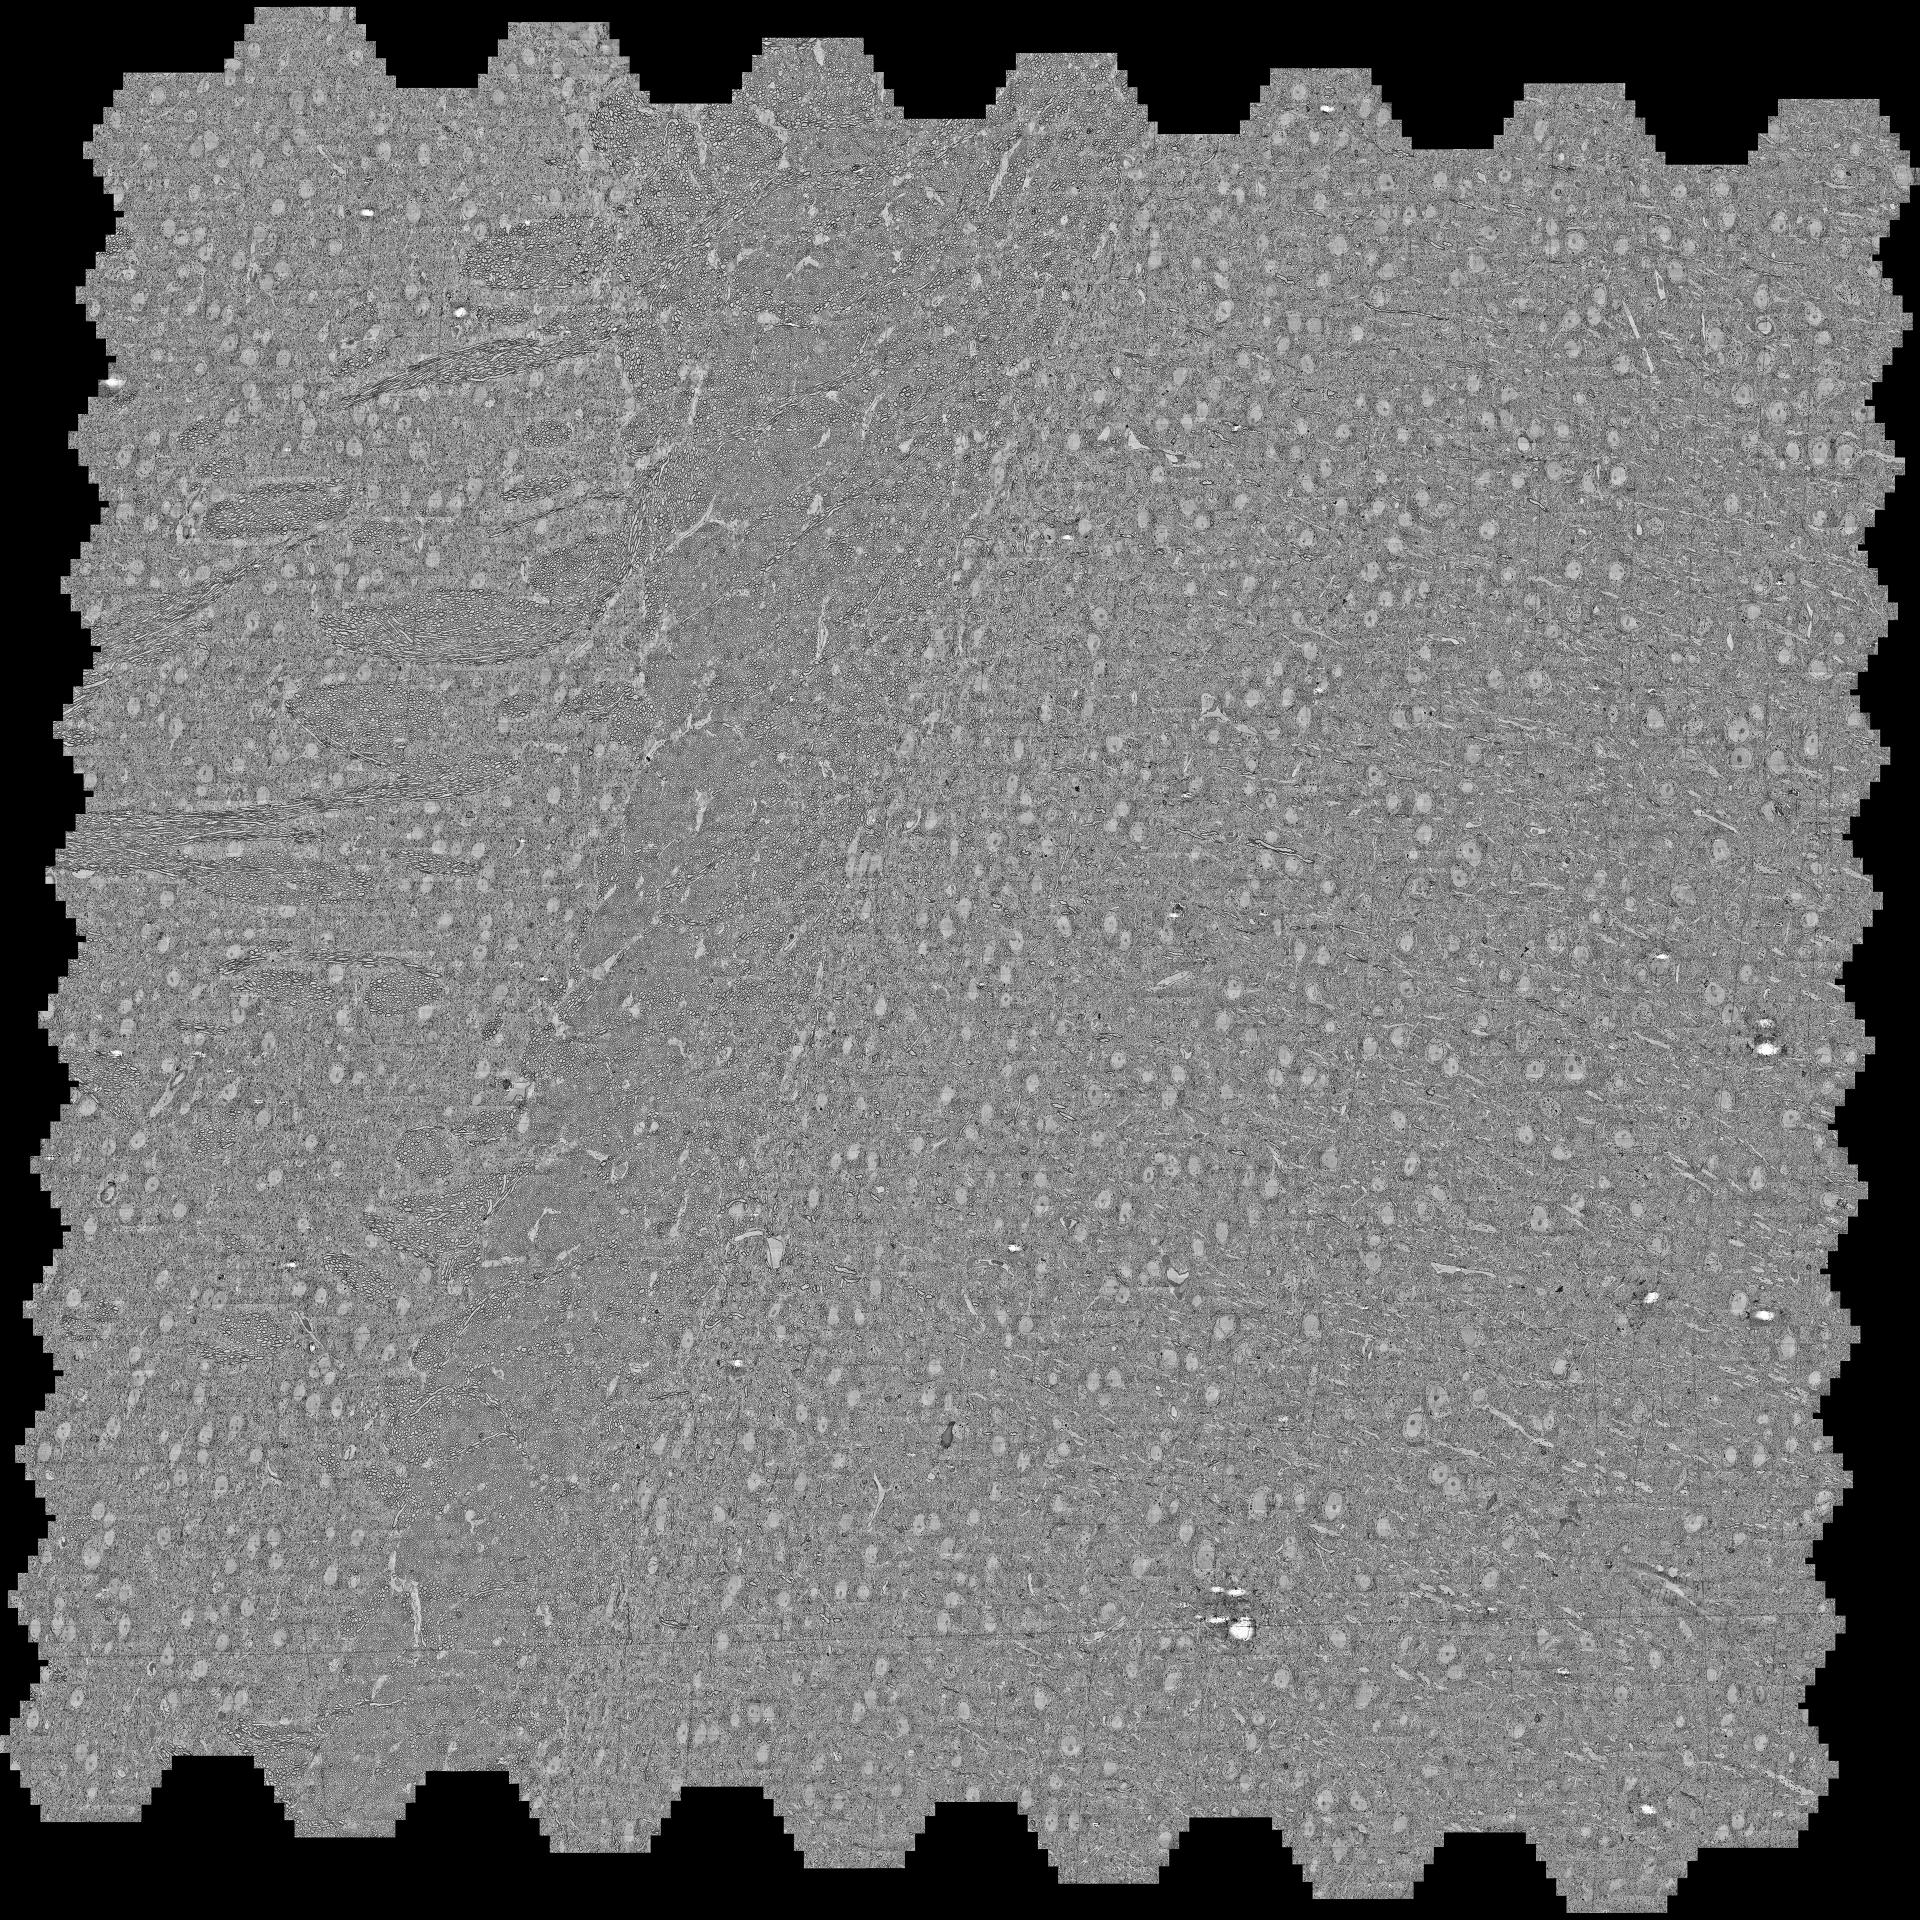 高コントラスト染色プロトコルに基づき作製し、ATUMtome（切片をテープに回収するウルトラミクロトーム）で切断した30 nm厚の脳切片から、4 nmピクセルサイズ、6.5分で取得した画像を合成した1平方ミリメートルのモザイク画像。 